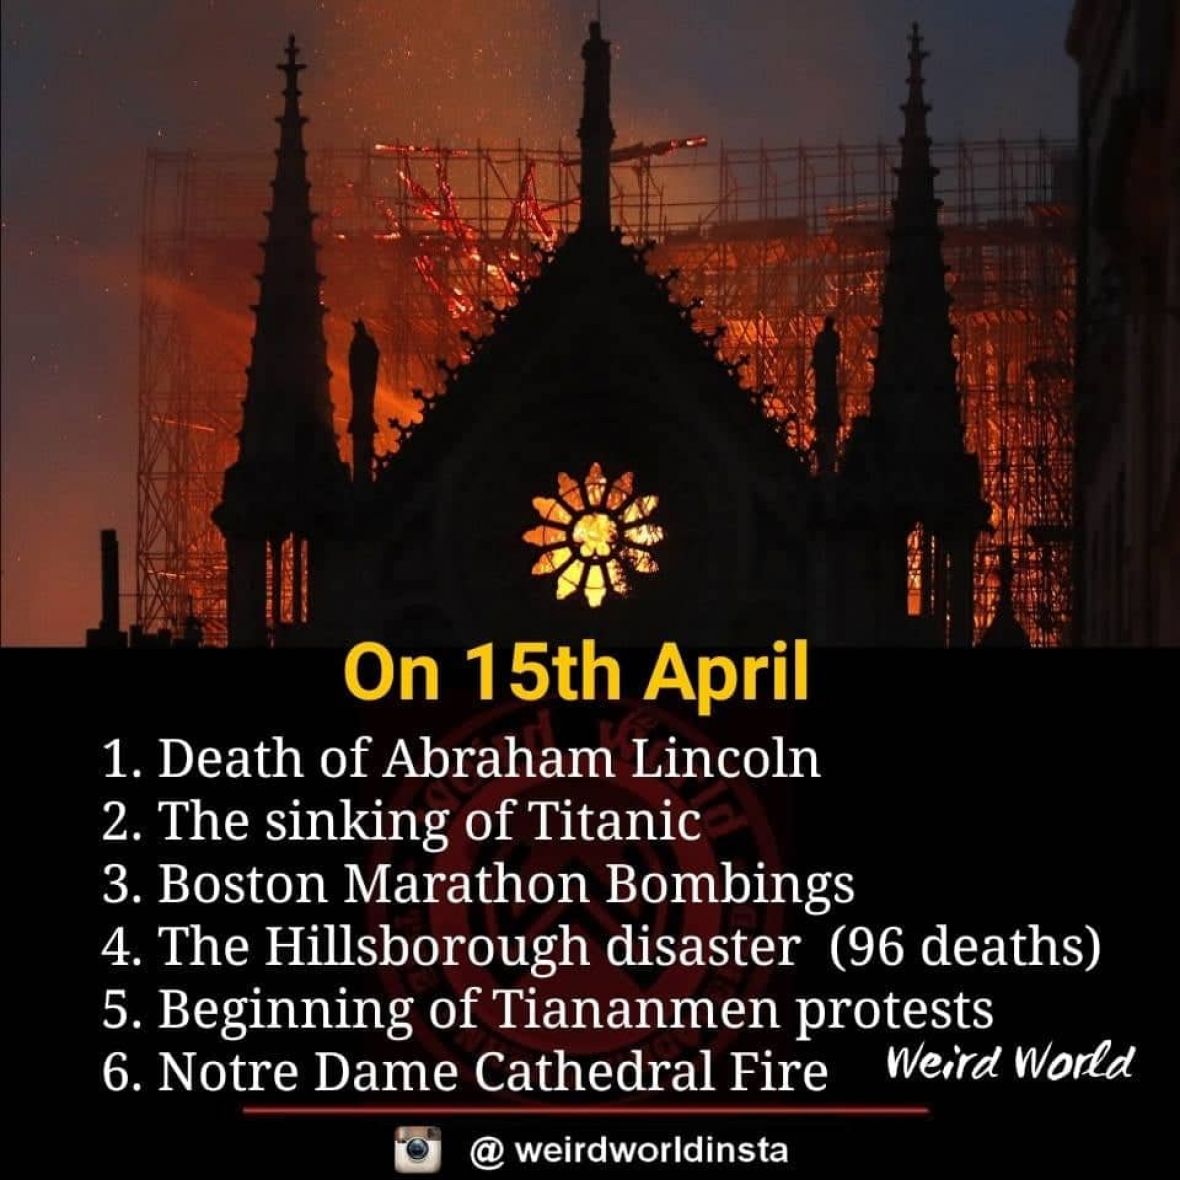 Svjetske tragedije na 15. april - undefined